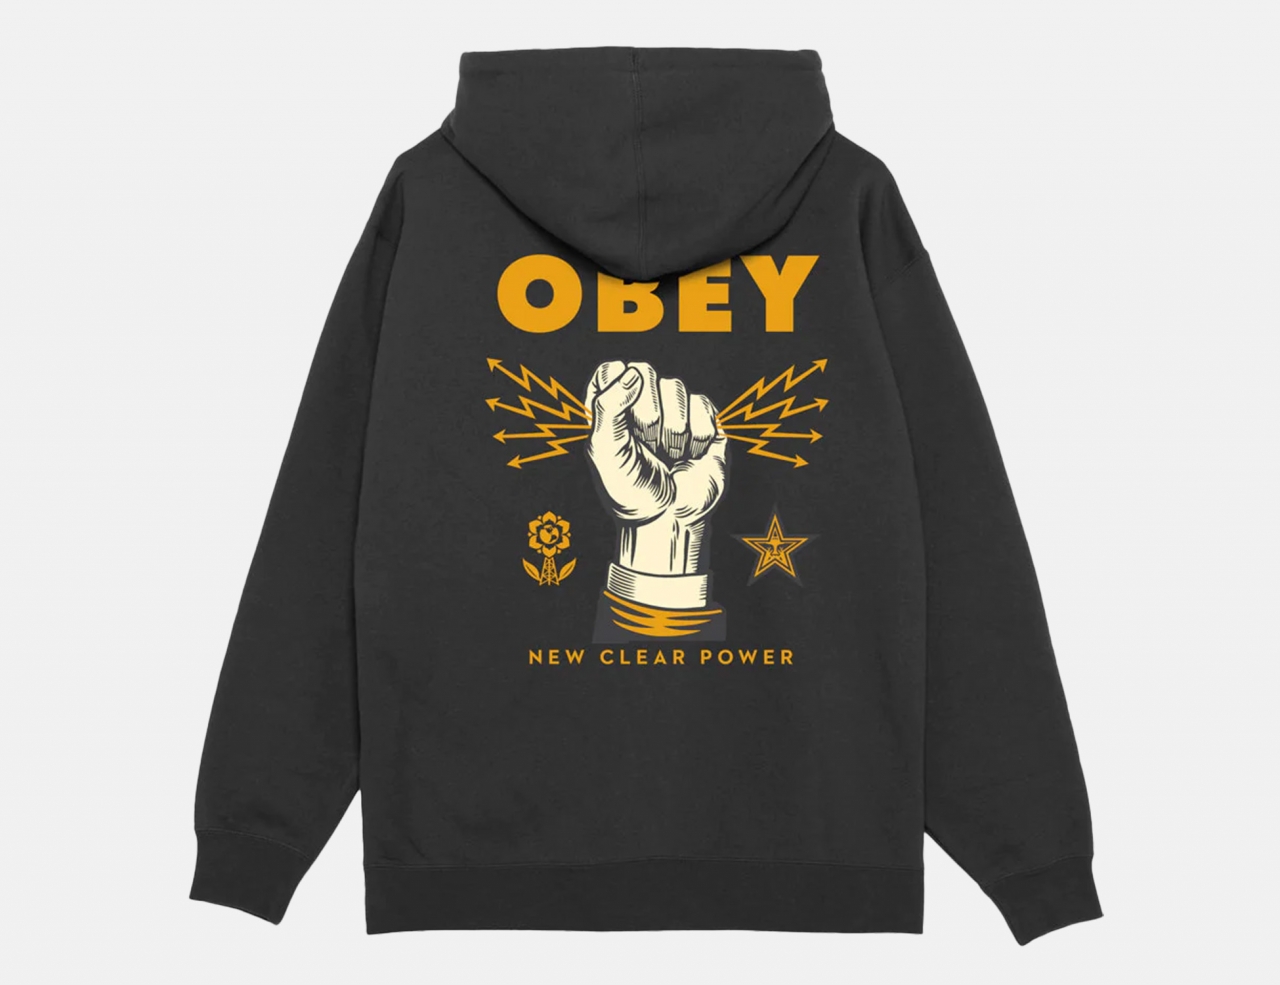 Obey New Clear Power Fleece Hoodie - Black